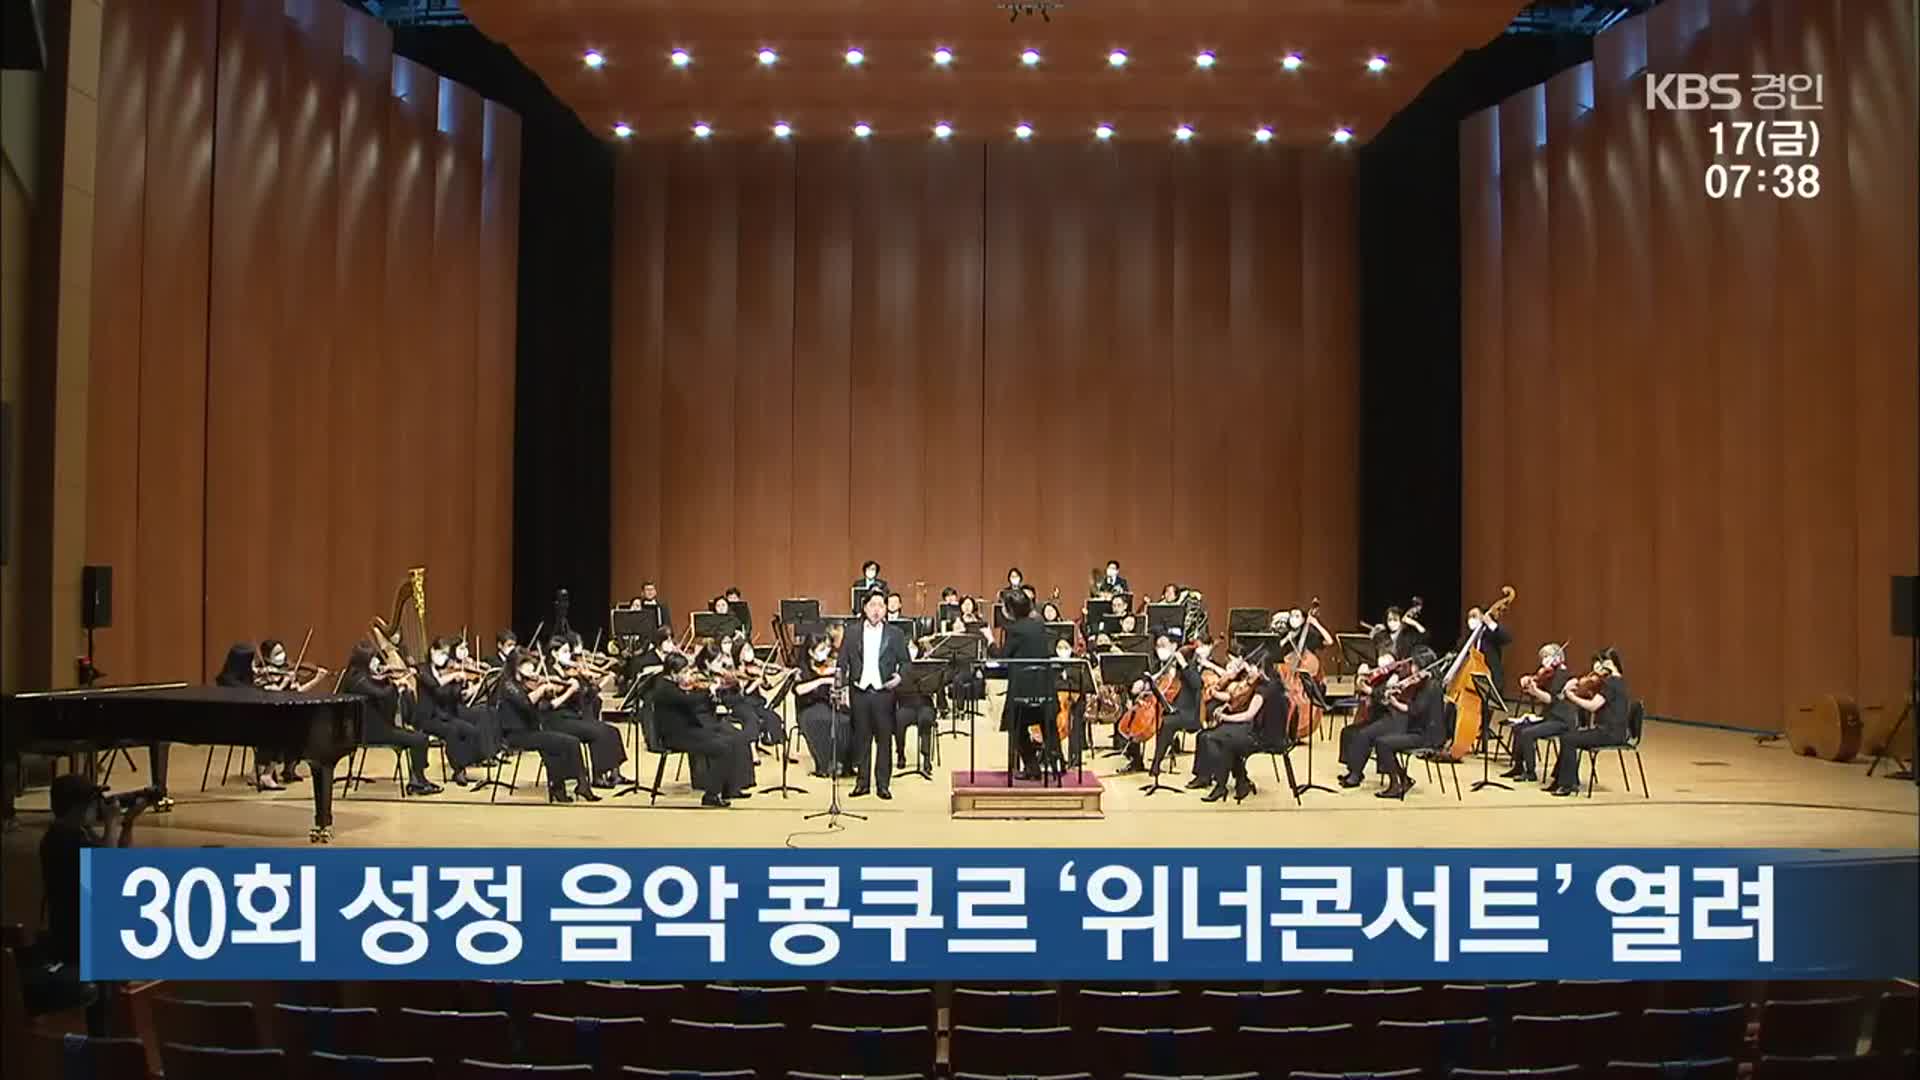 30회 성정 음악 콩쿠르 ‘위너콘서트’ 열려